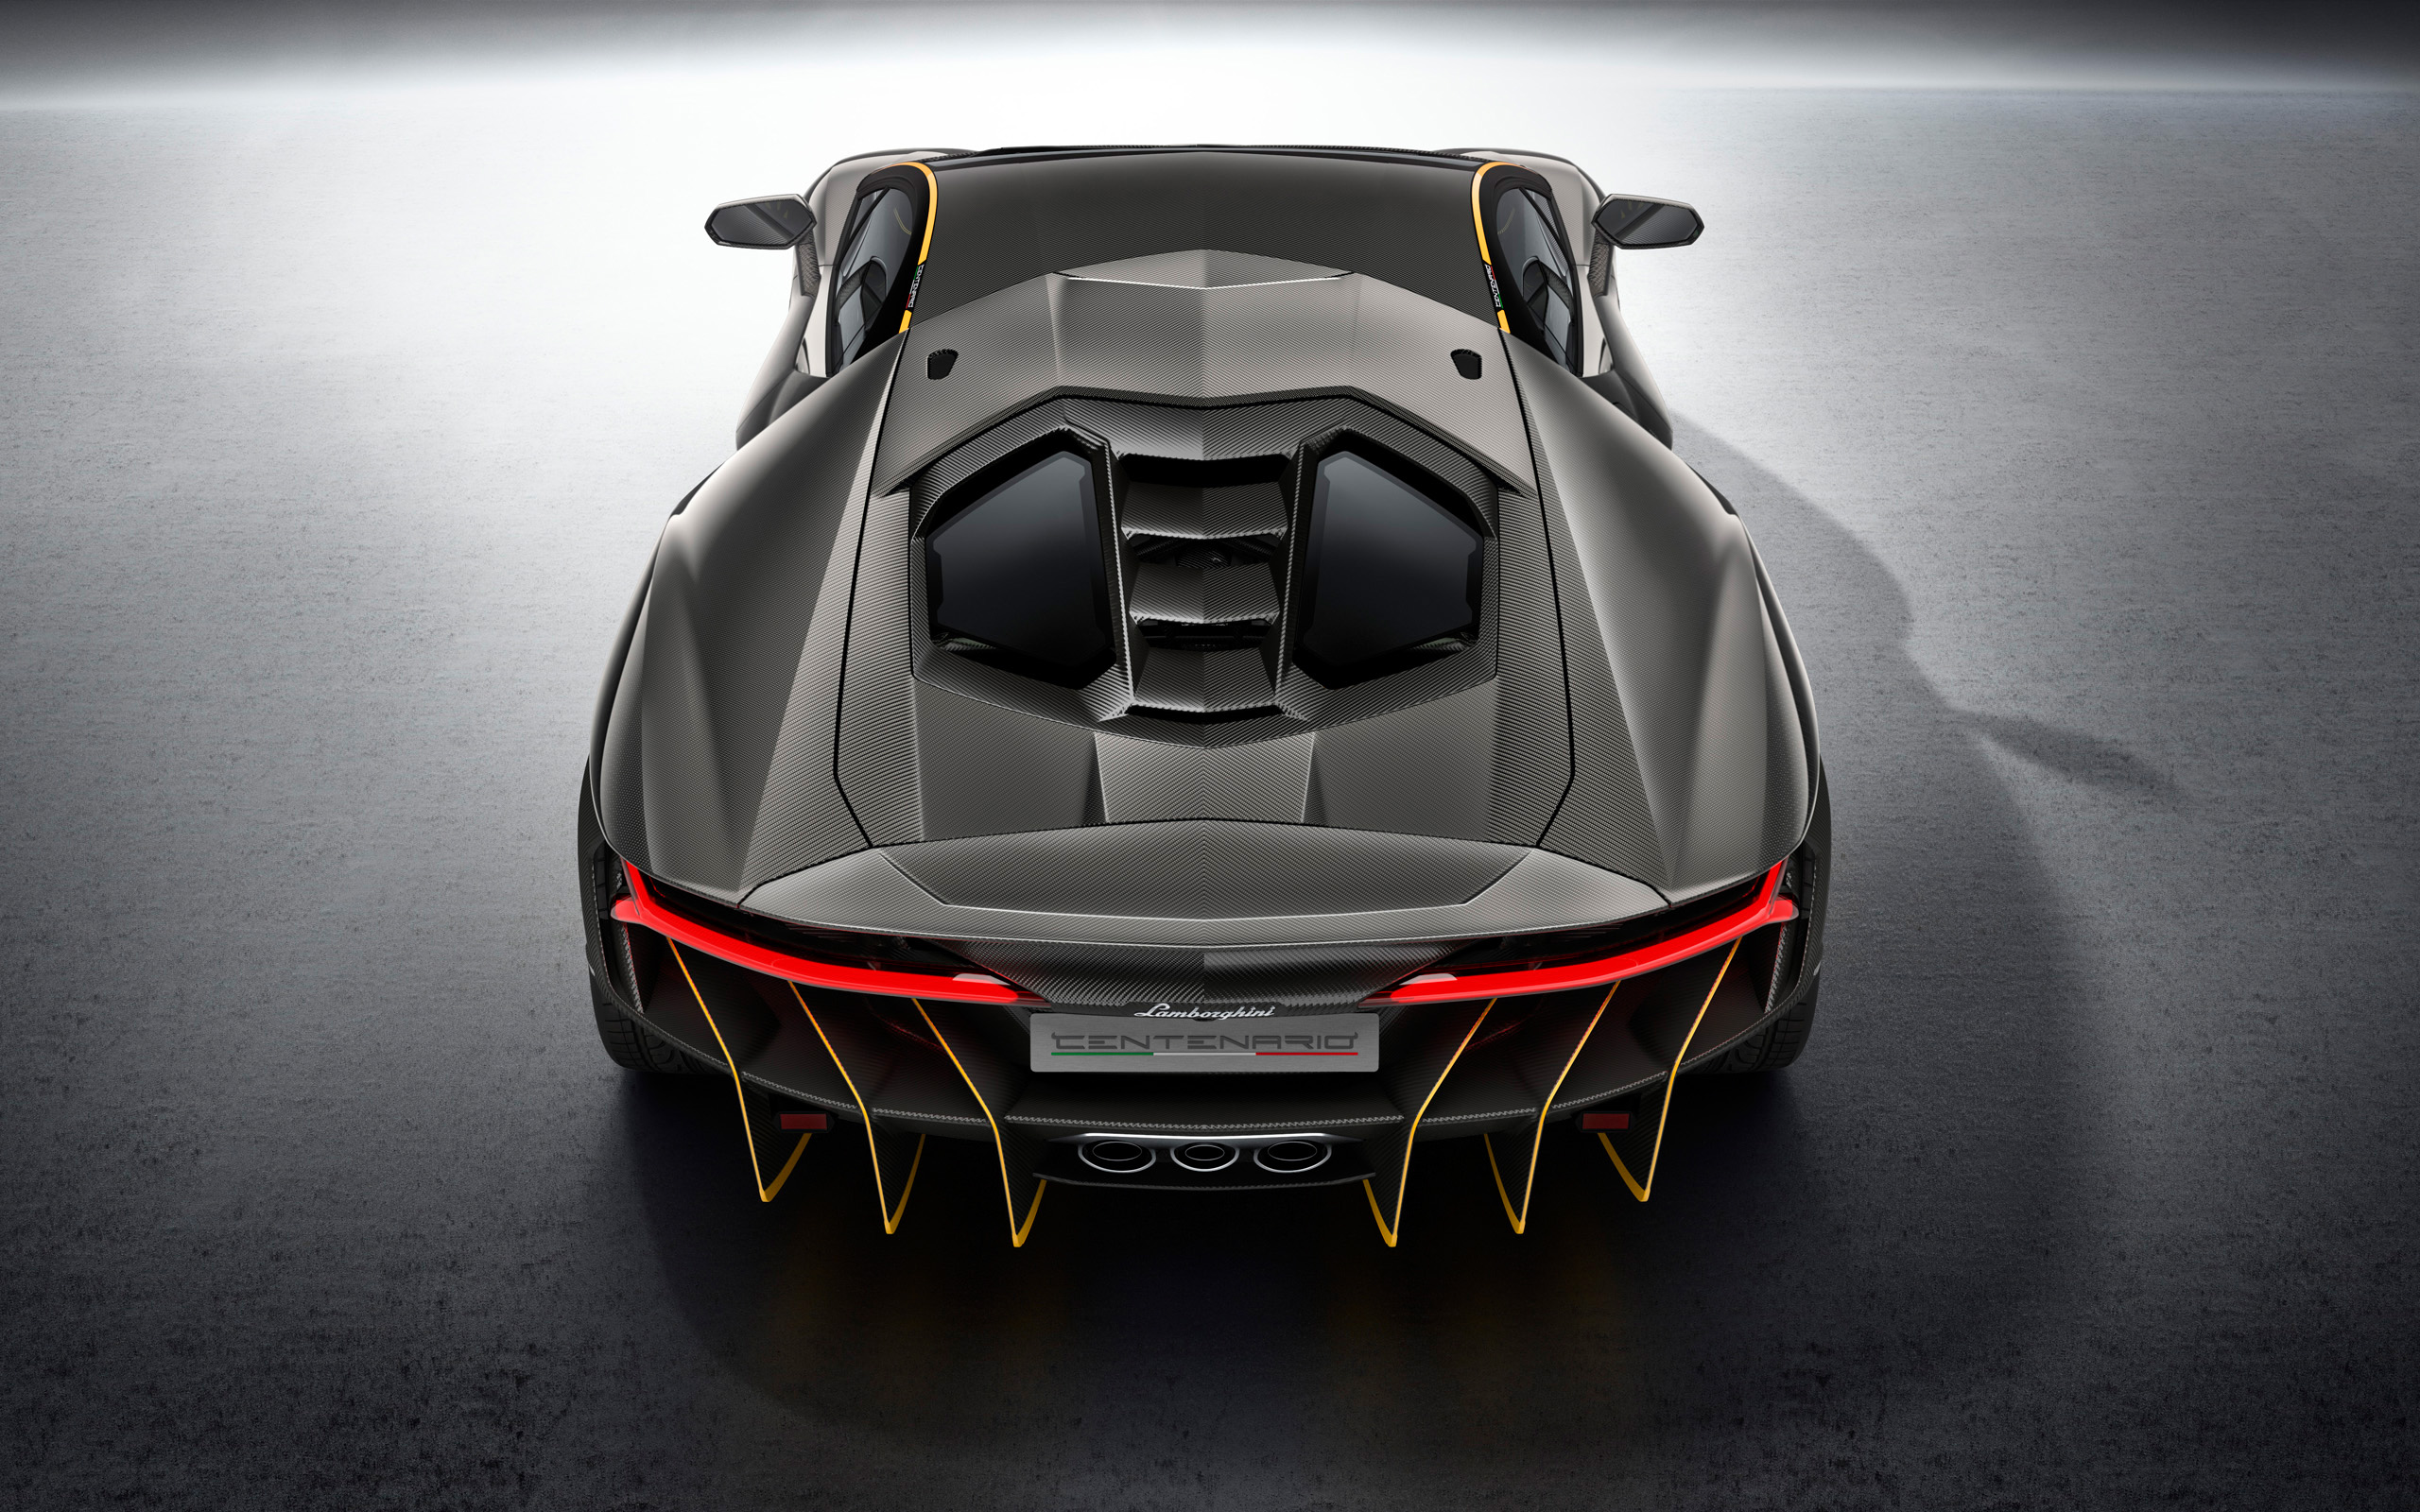 2016 Lamborghini Centenario LP 770 4 2 Wallpaper | HD Car ...